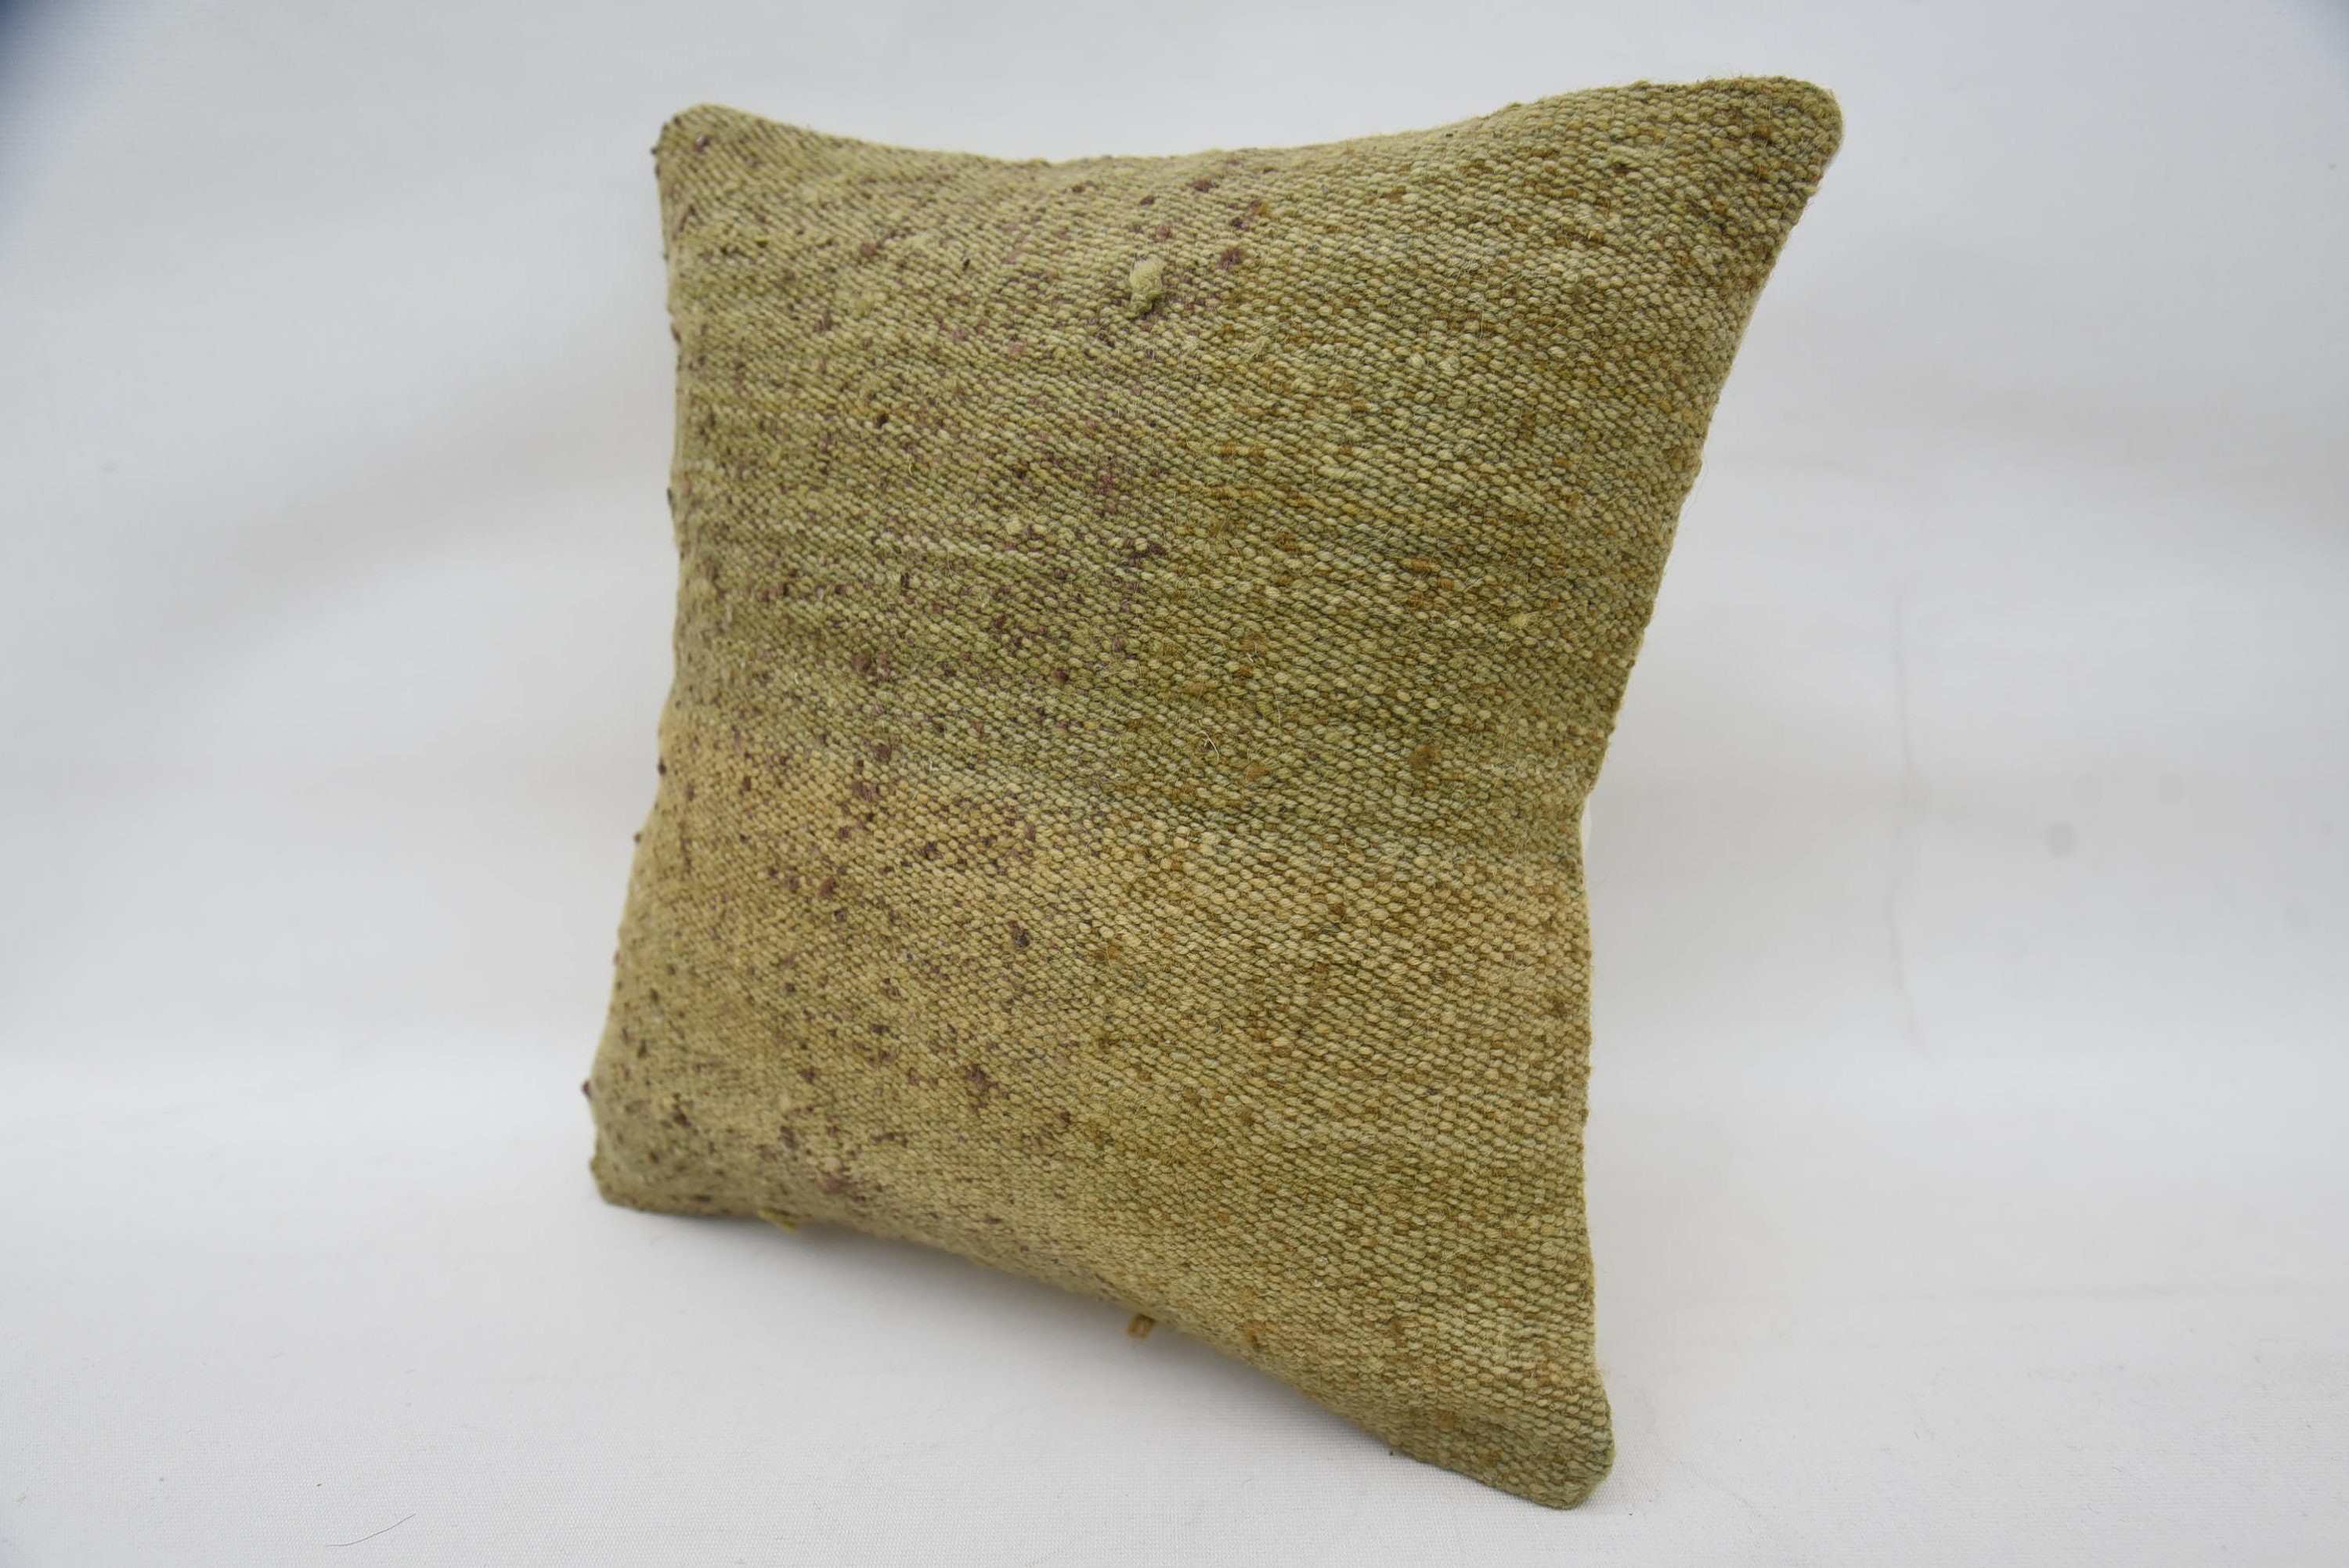 Knitted Cushion Cover, Ethnical Kilim Rug Pillow, Farmhouse Cushion, Handmade Kilim Cushion, 14"x14" Beige Pillow Cover, Home Decor Pillow